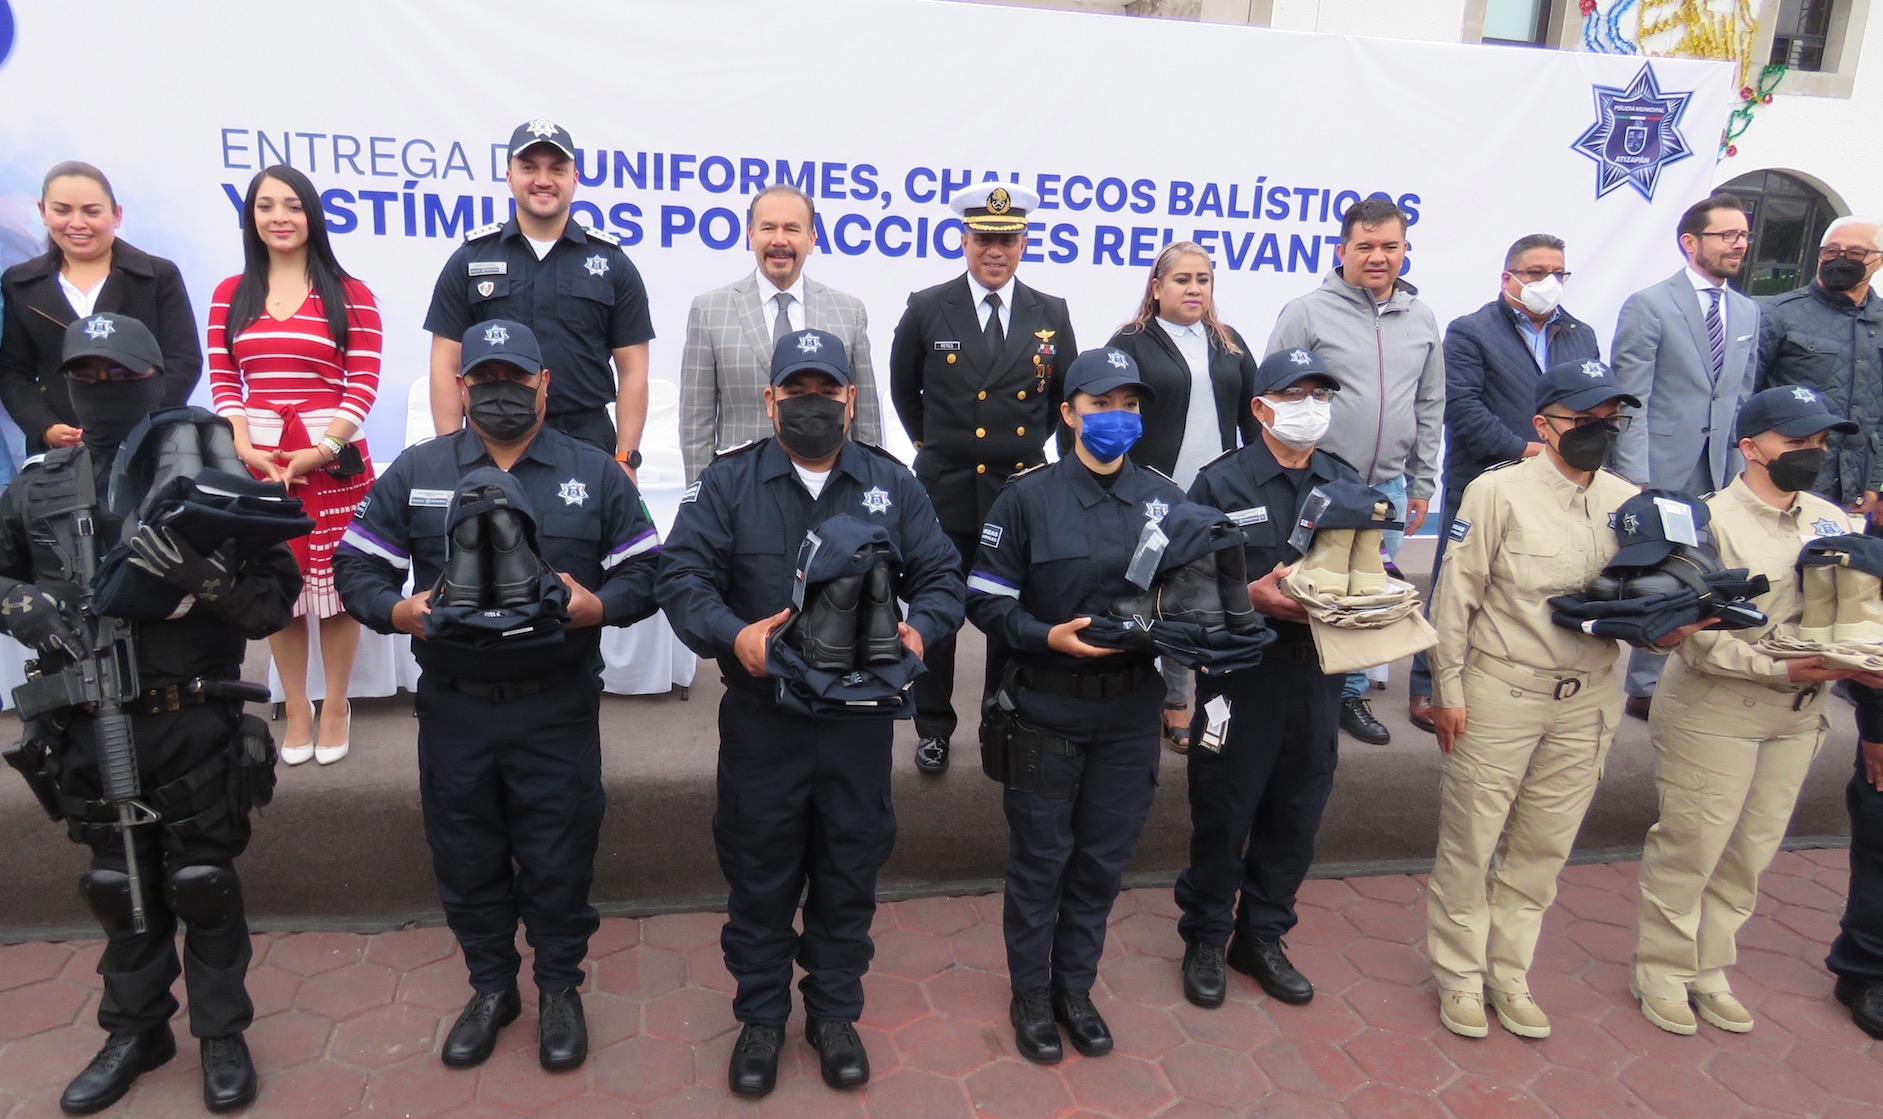 Policías de Atizapán de Zaragoza con uniformes adecuados